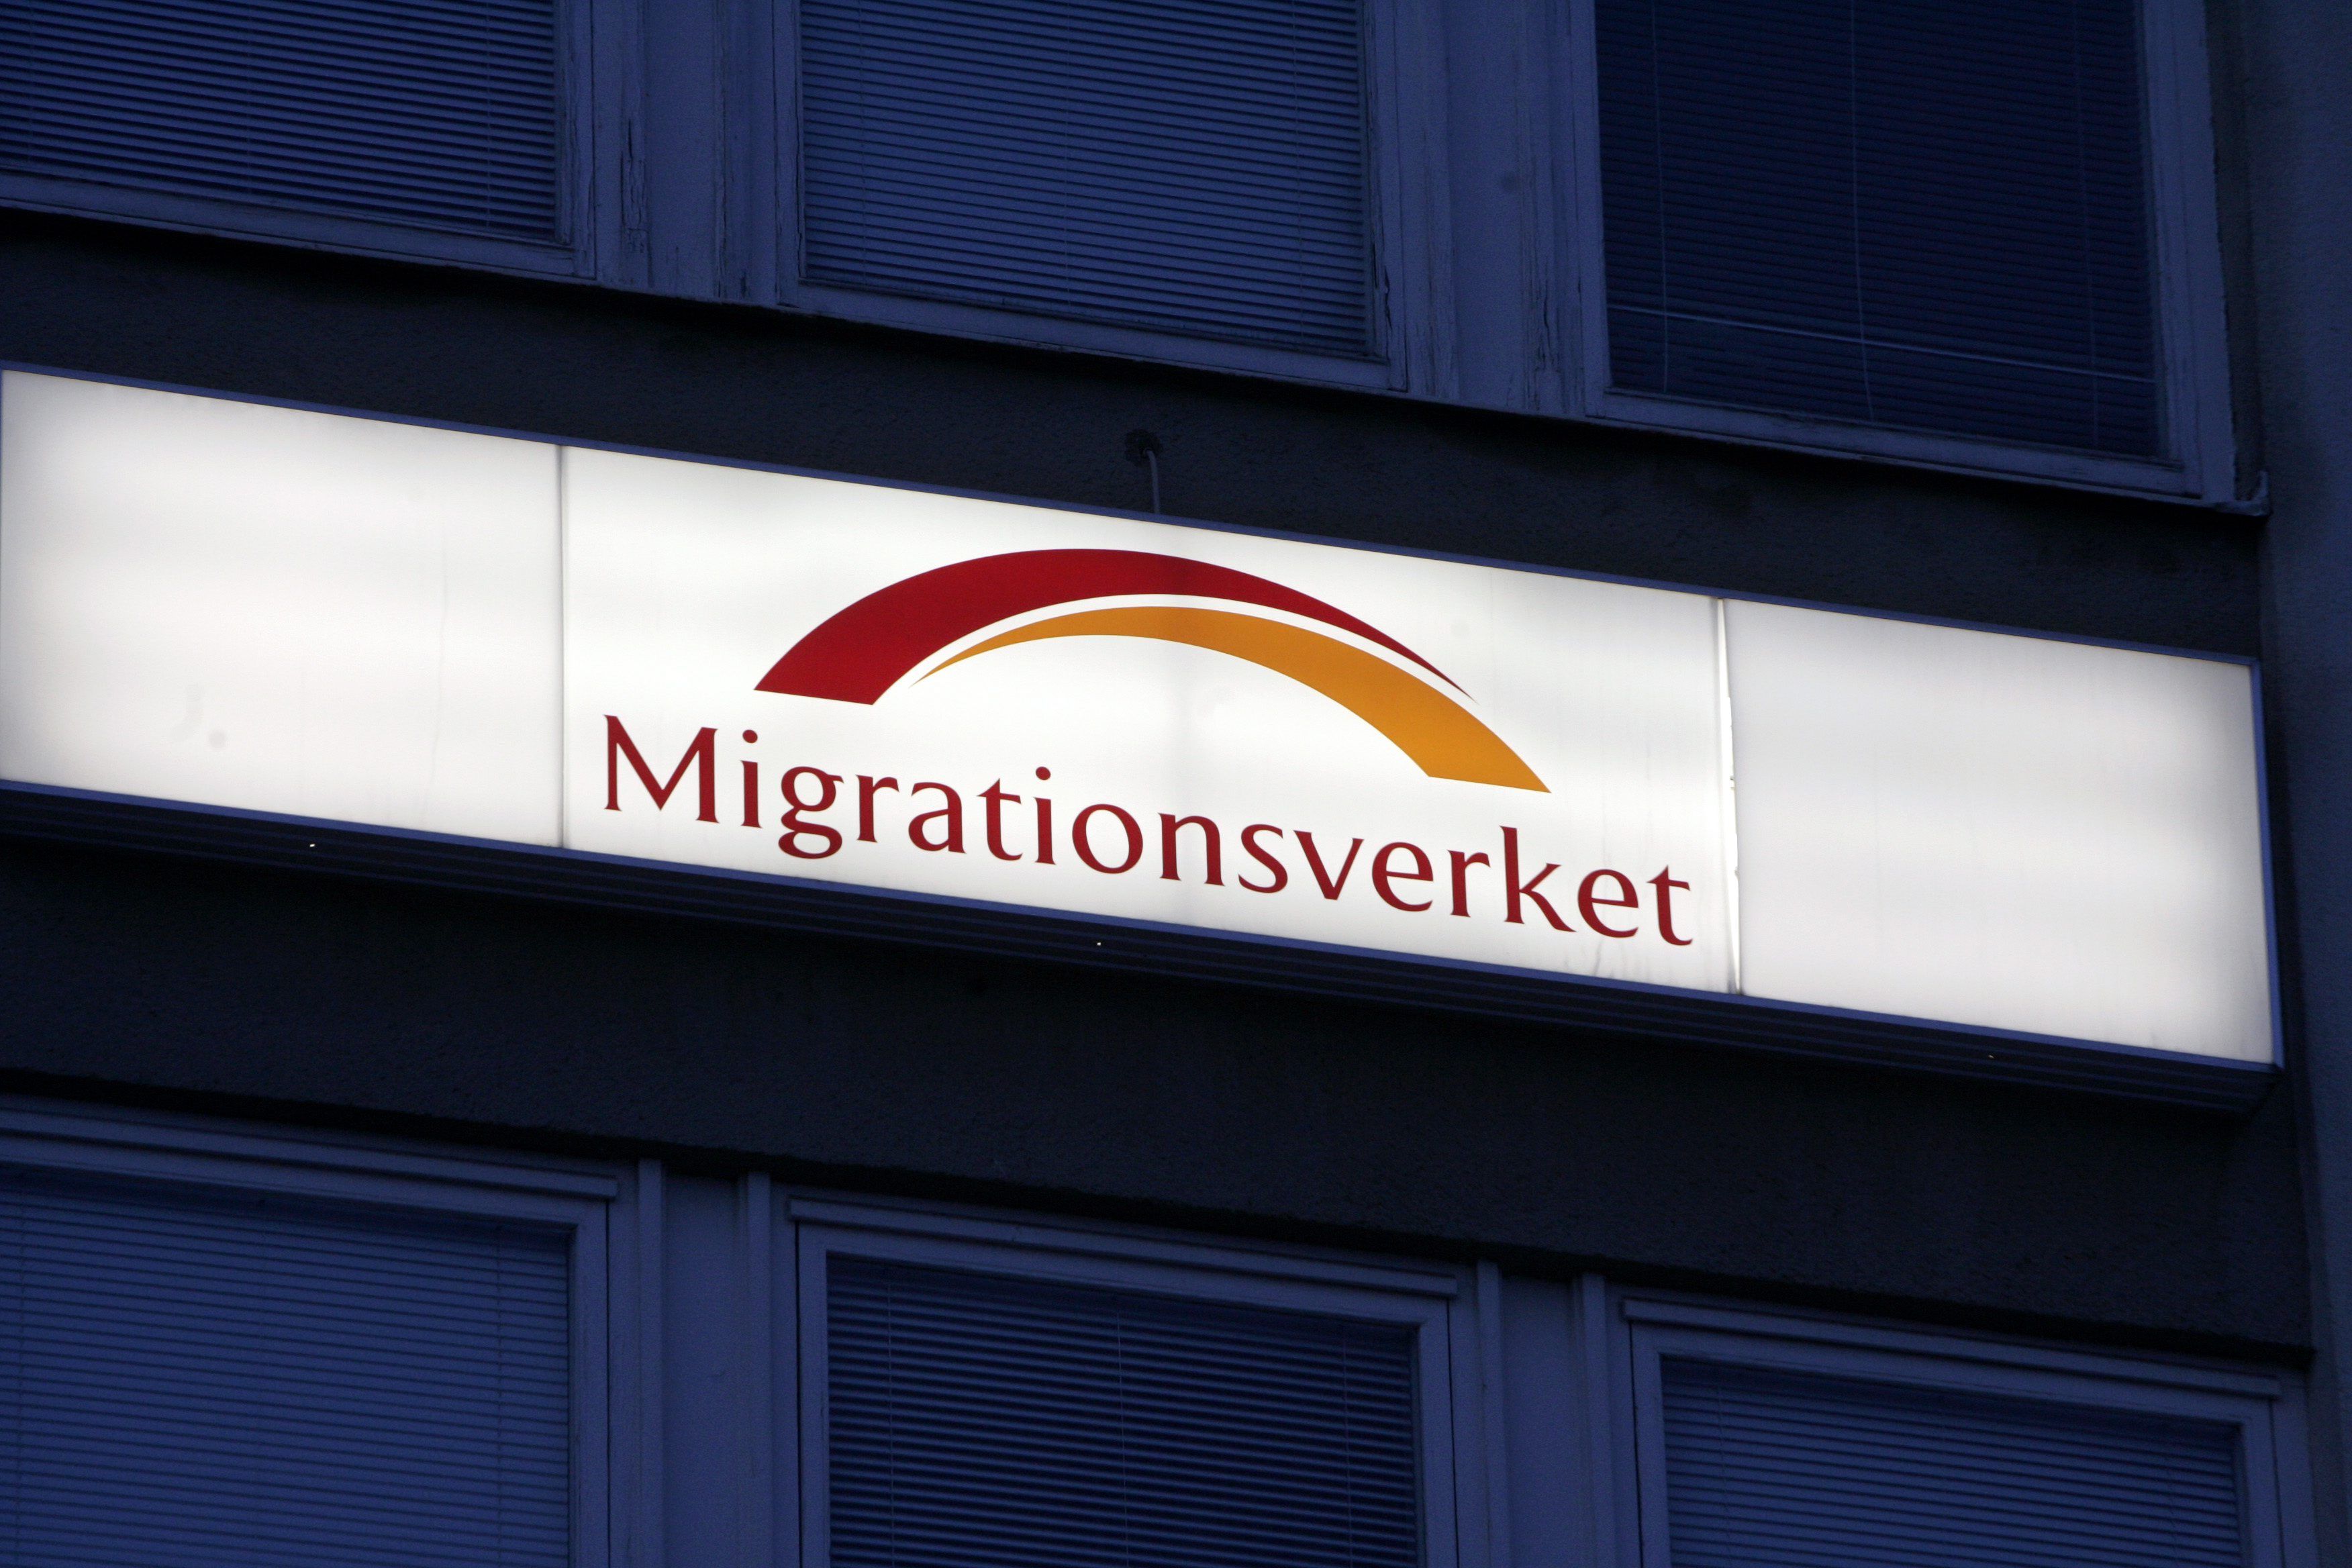 Migration, Anställd, Bortskämd, Asylsökande, Migrationsverket